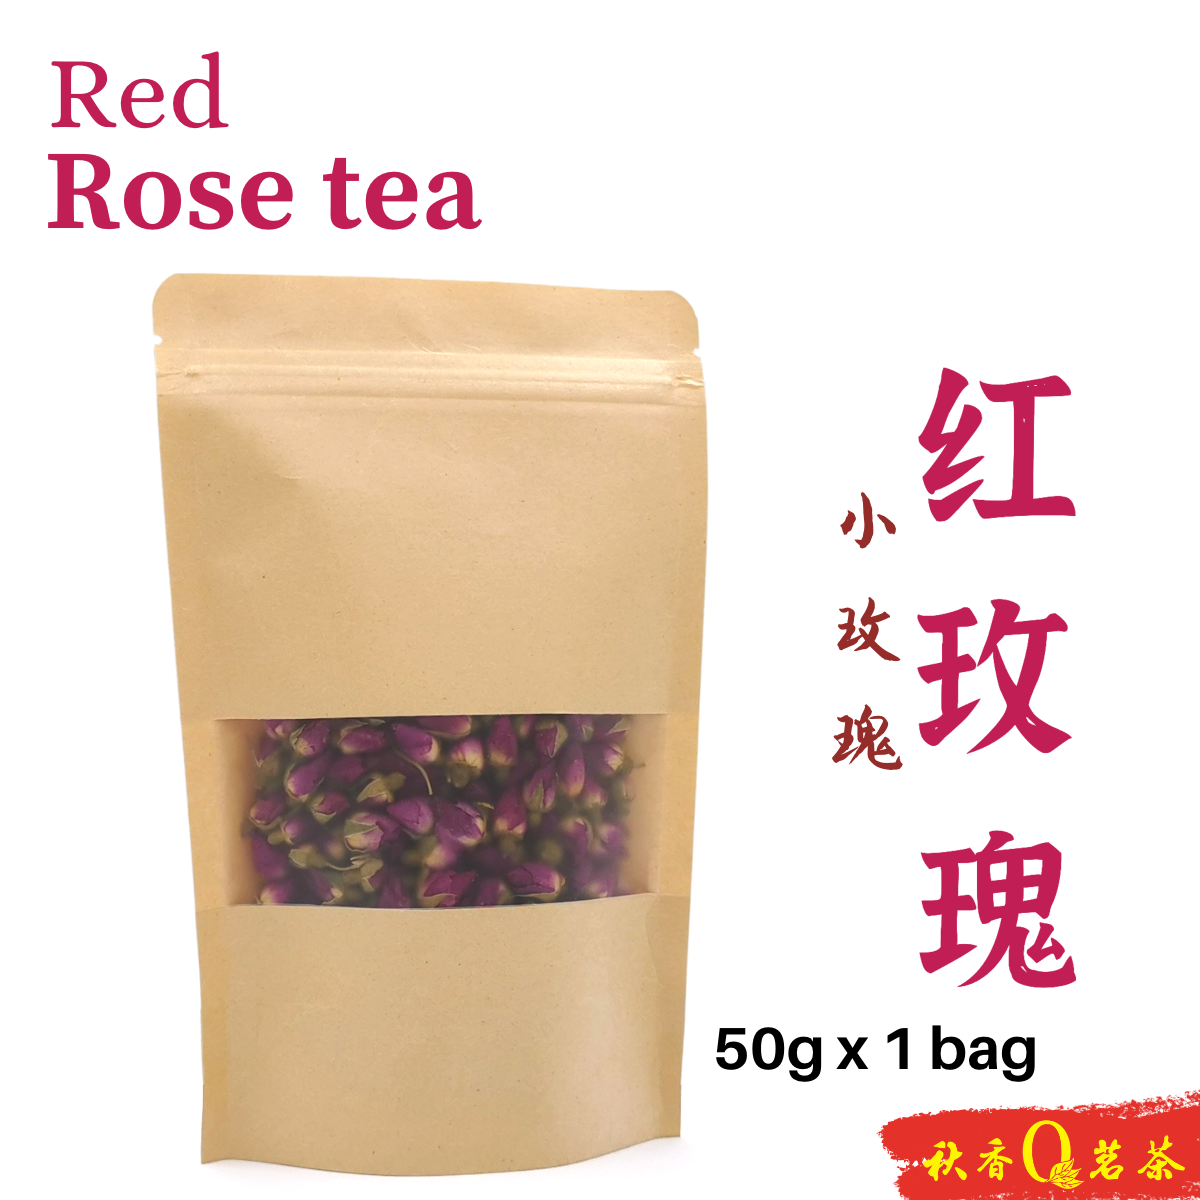 红玫瑰 & 粉玫瑰 Red Rose tea & Pink Rose tea 【50g】｜【花草茶 Herbal tea】